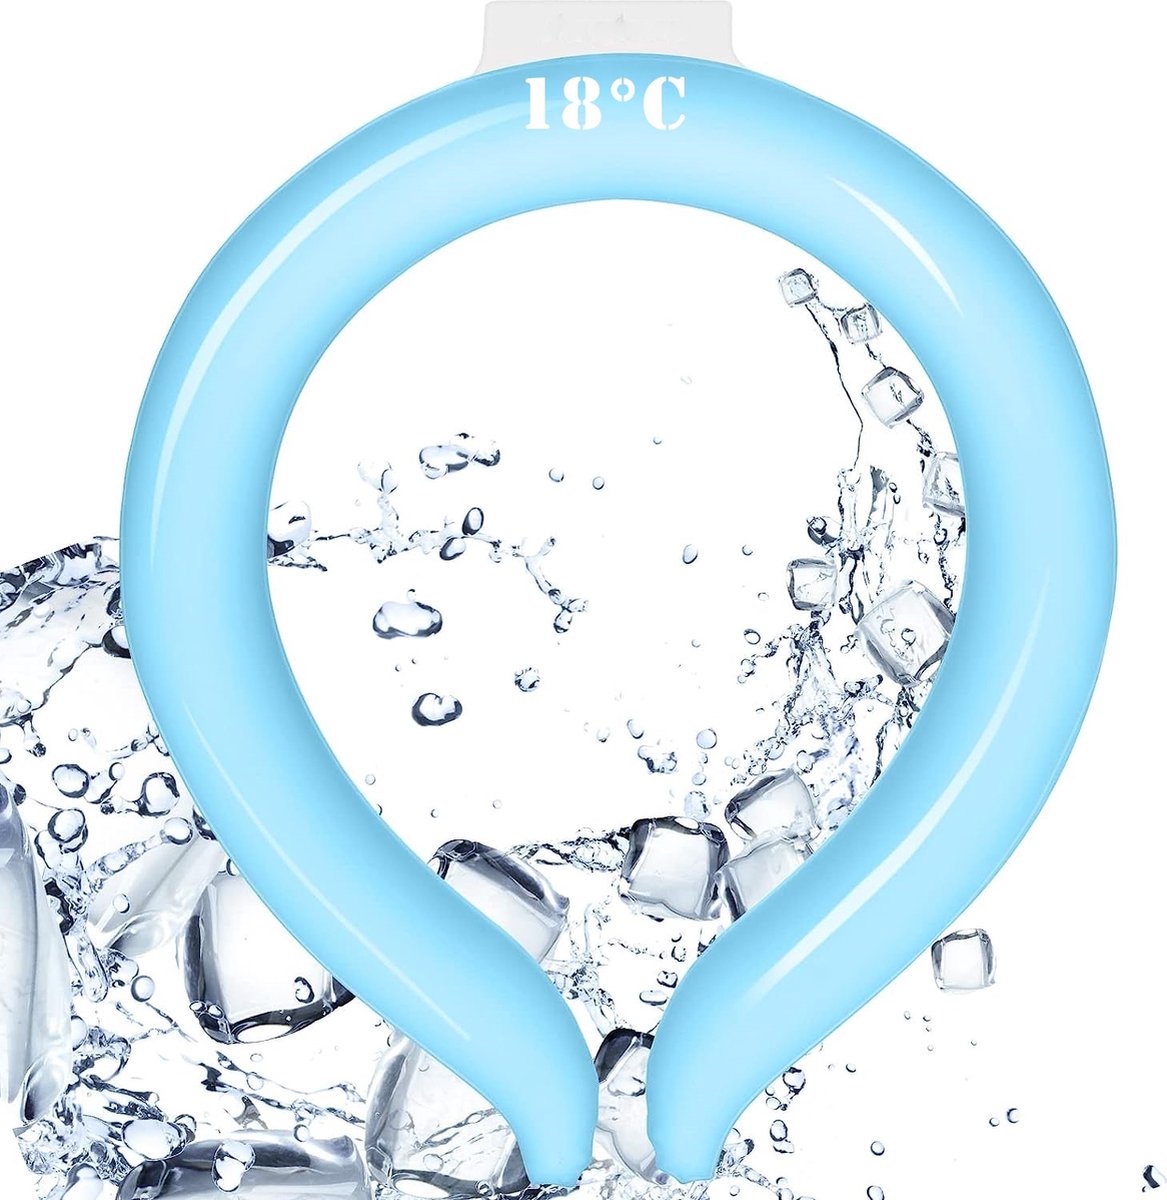 Huntex Ice Ring Nekkoeler Blauw; Uw Duurzame en Comfortabele Alternatief voor een Nekventilator - Biedt tot een Uur Verkoeling - Ervaar een Aangename Temperatuur van 18°C